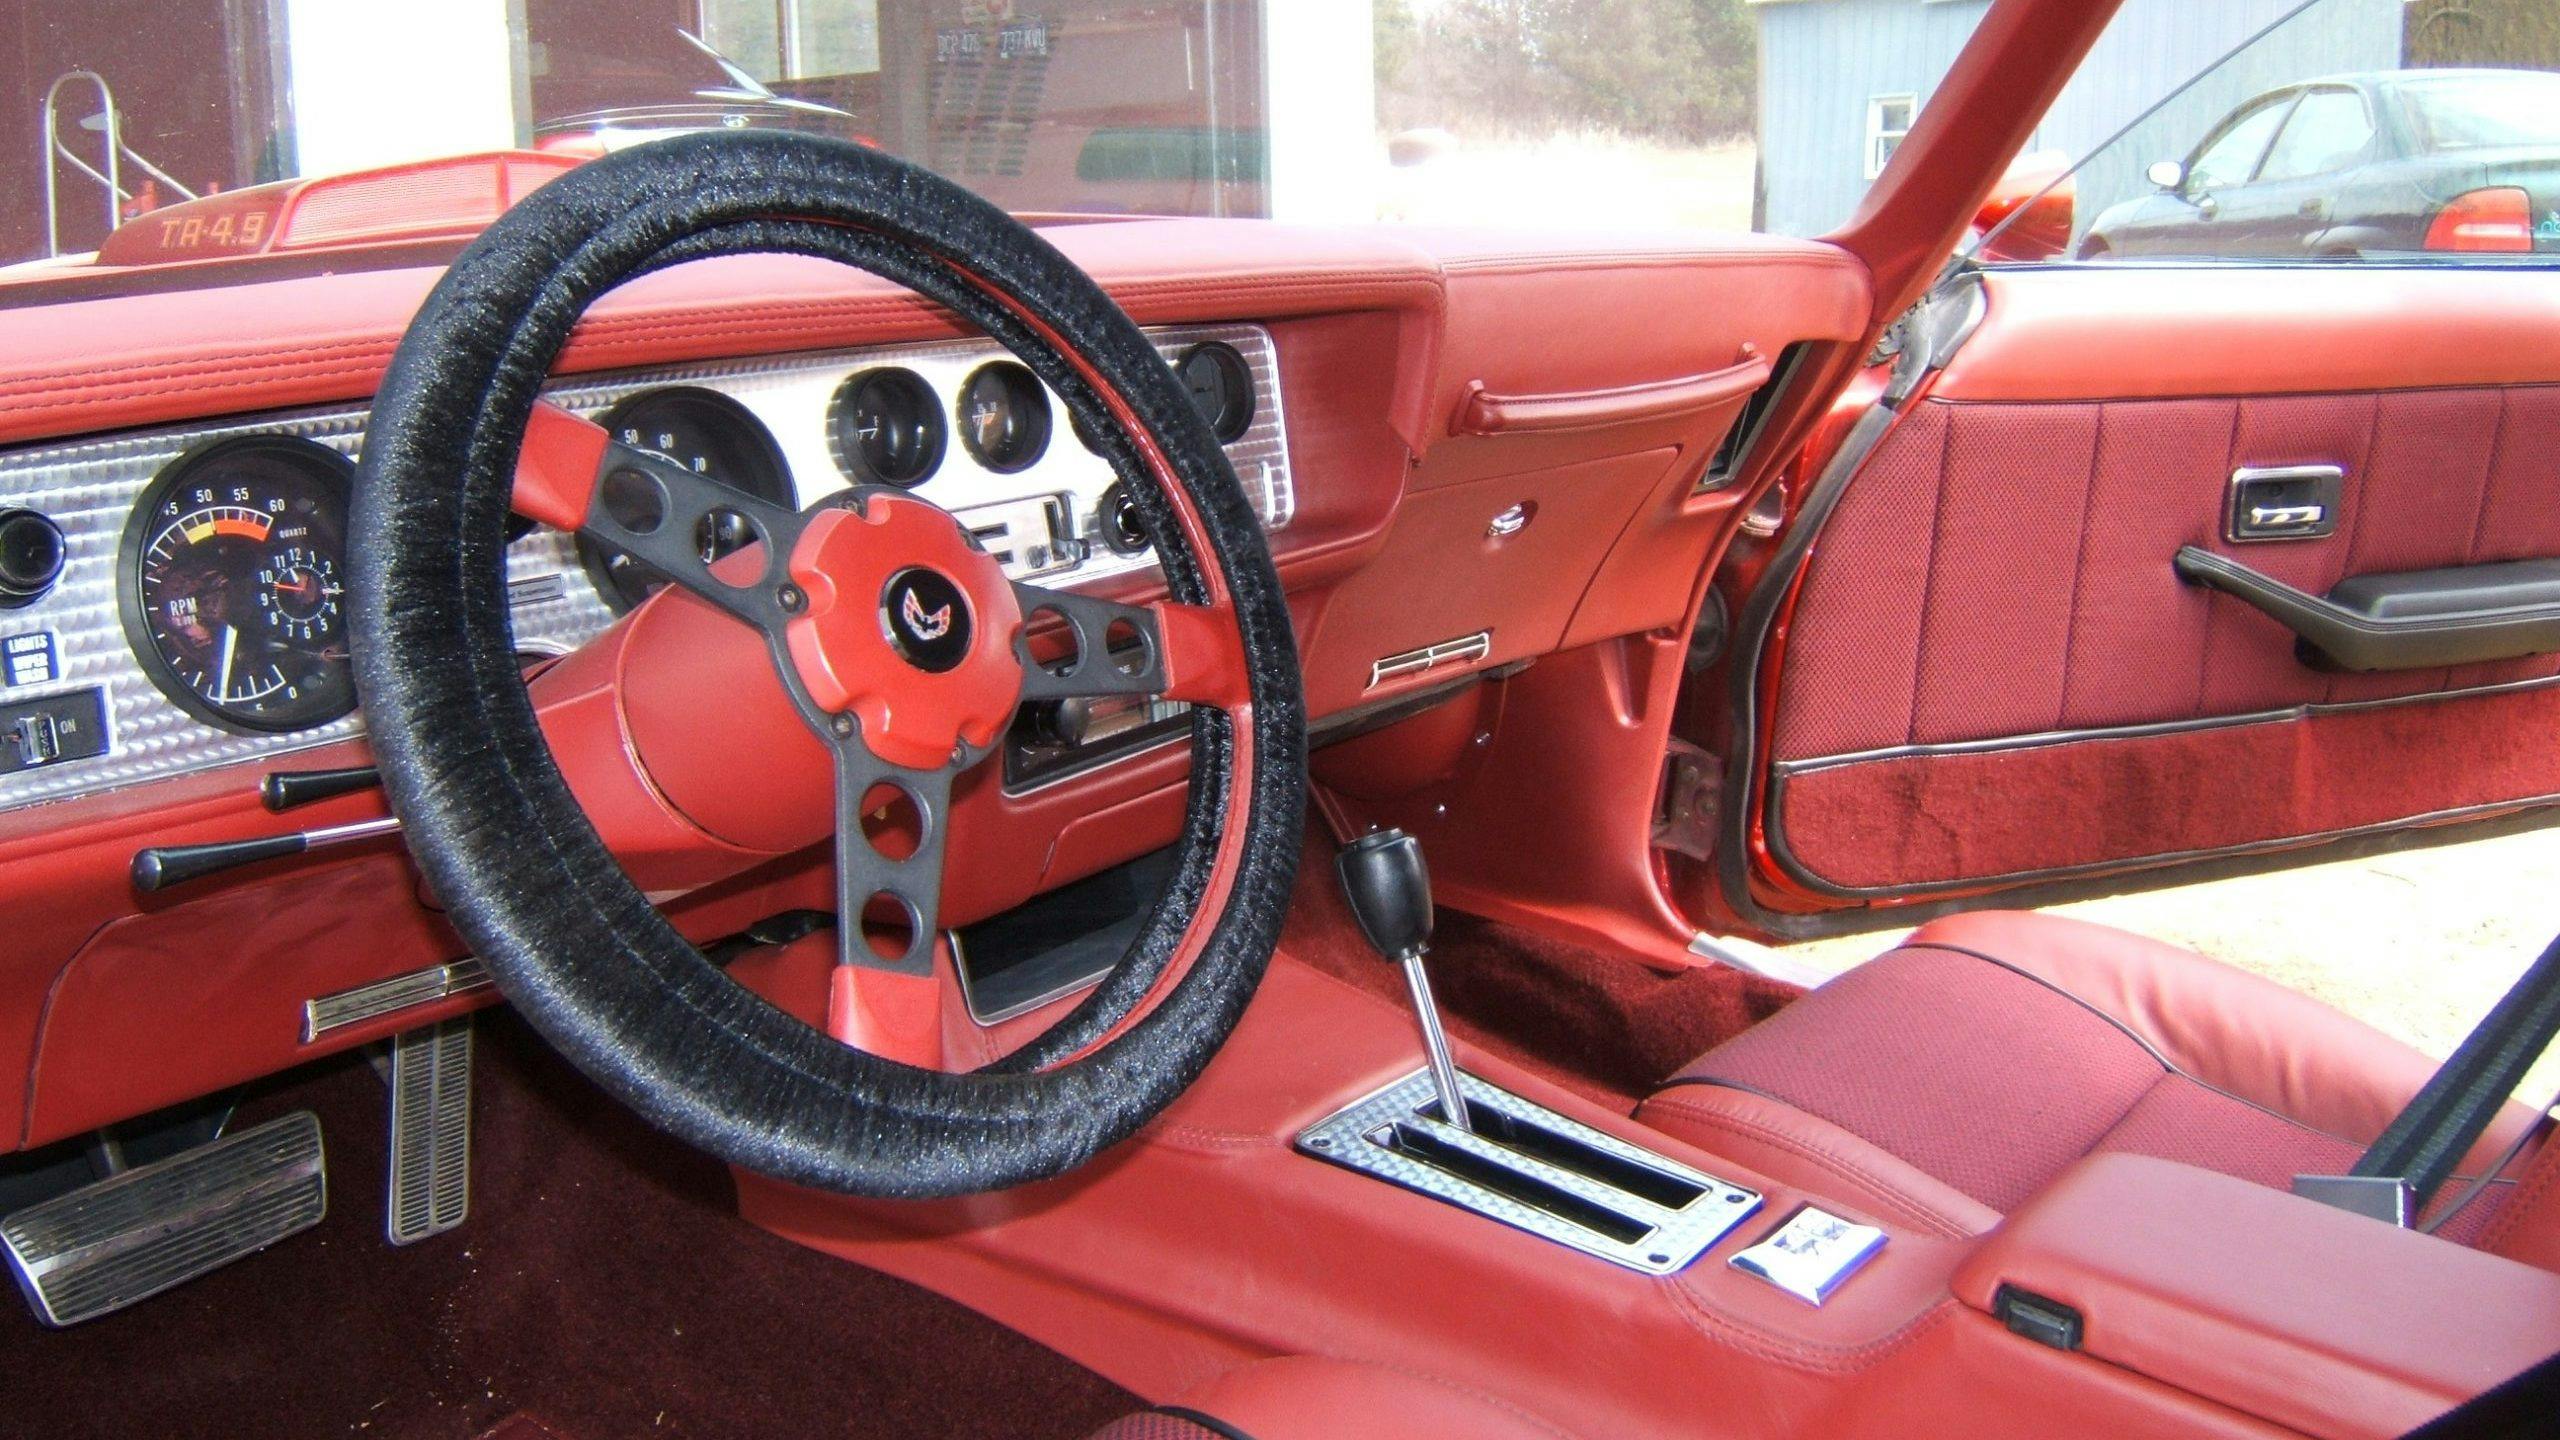 Pontiac Firebird interior